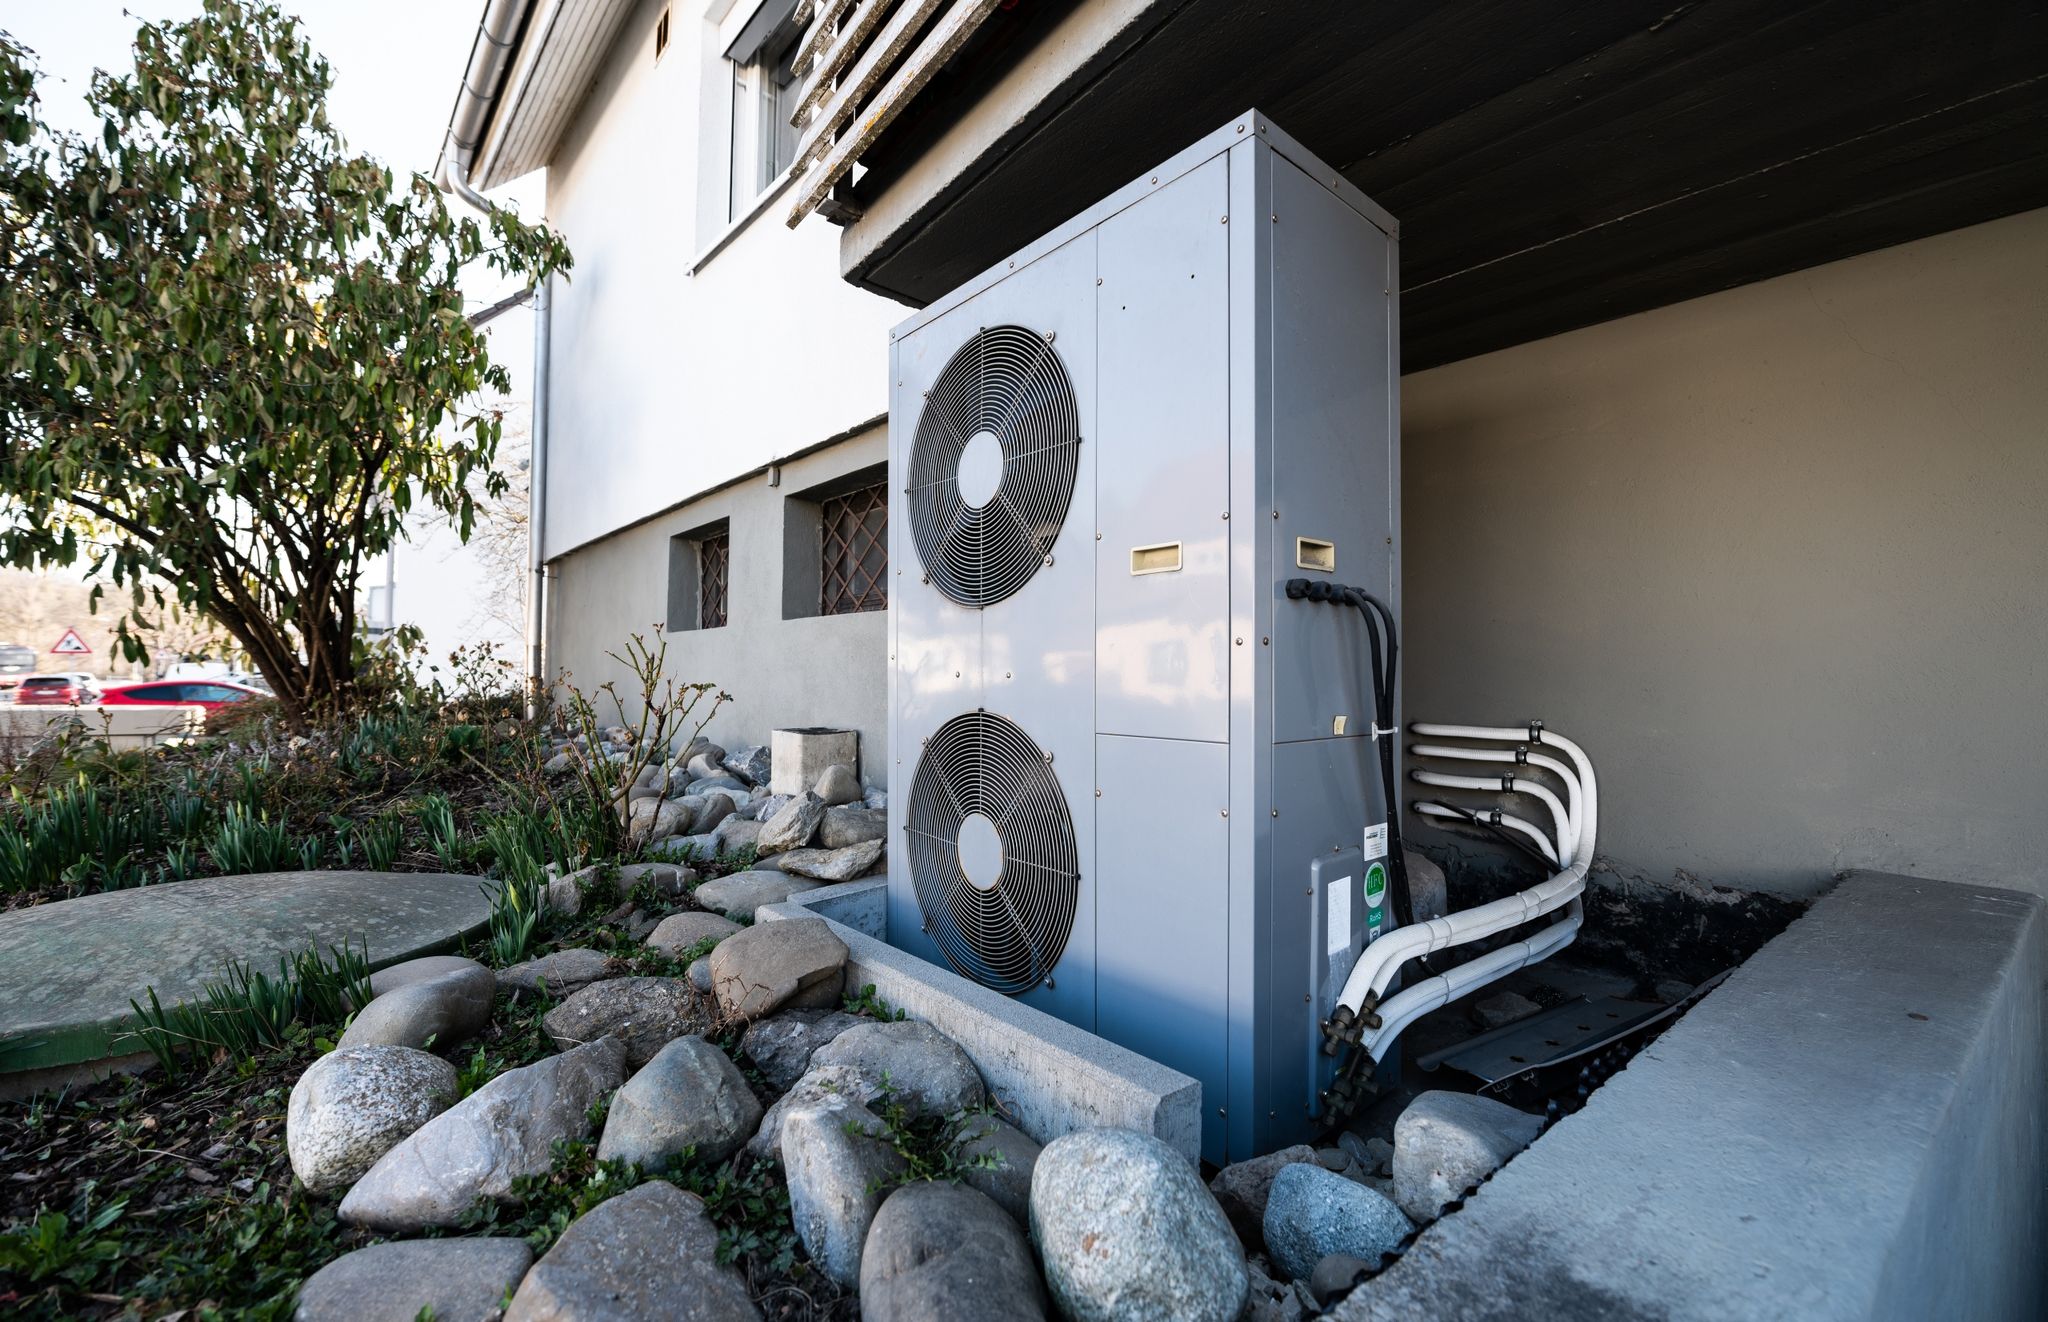 Lüftungsanlage einer Wärmepumpe: Eigentümer bekommen mit den Fördermitteln Unterstützung bei einer Sanierung ihres Gebäudes, die dauerhaft Energiekosten einspart.